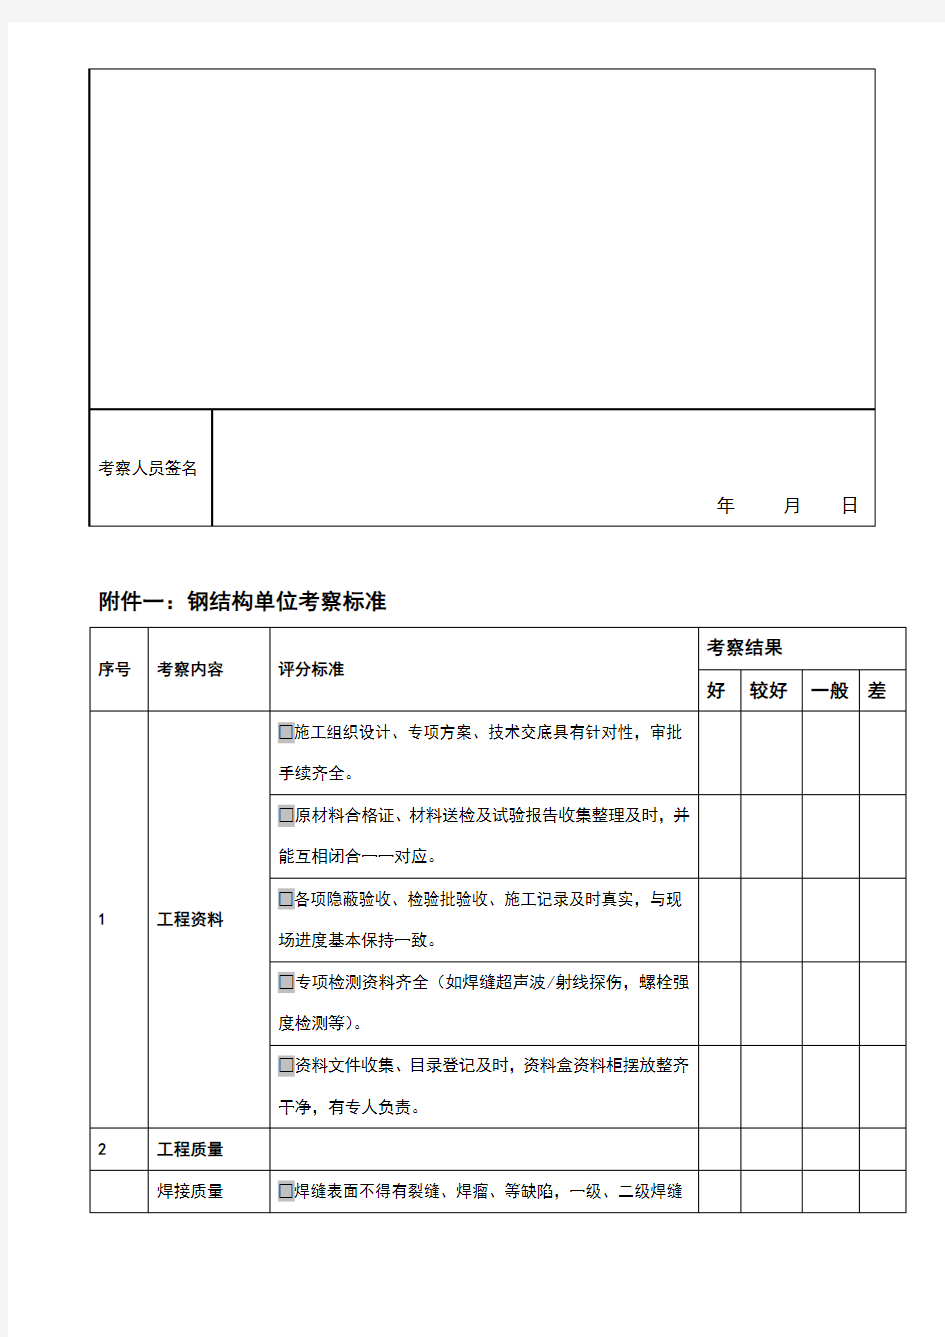 钢结构分包单位考察文件(项目考察表及生产厂考察内容提示要点)